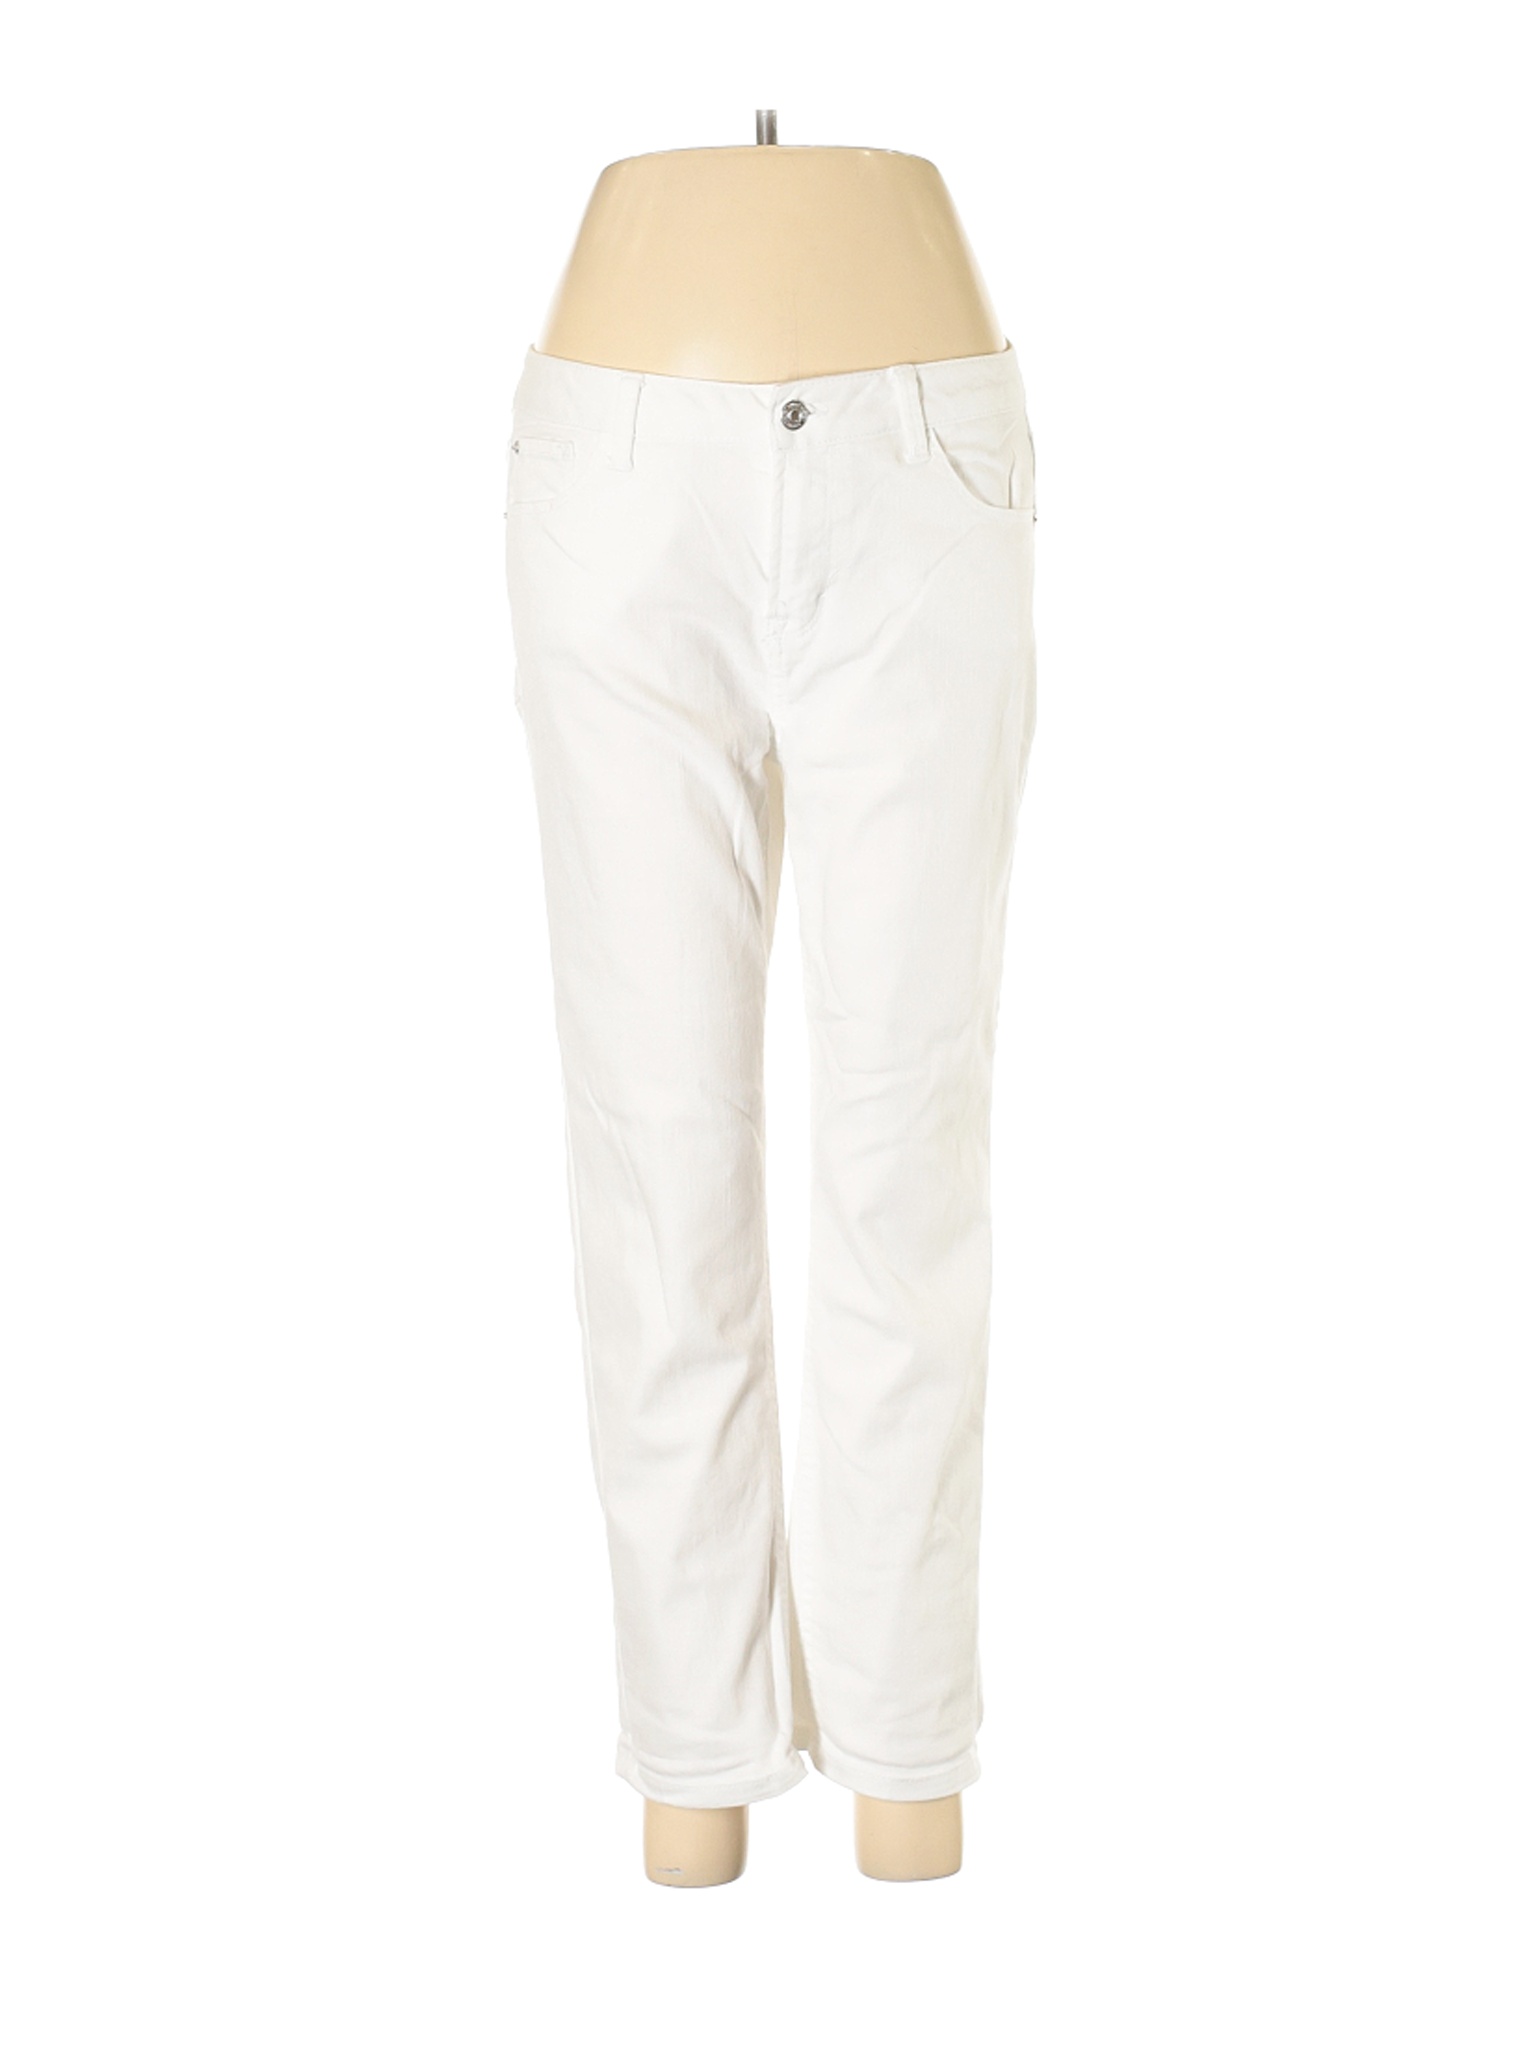 Kensie Women White Jeans 28W | eBay